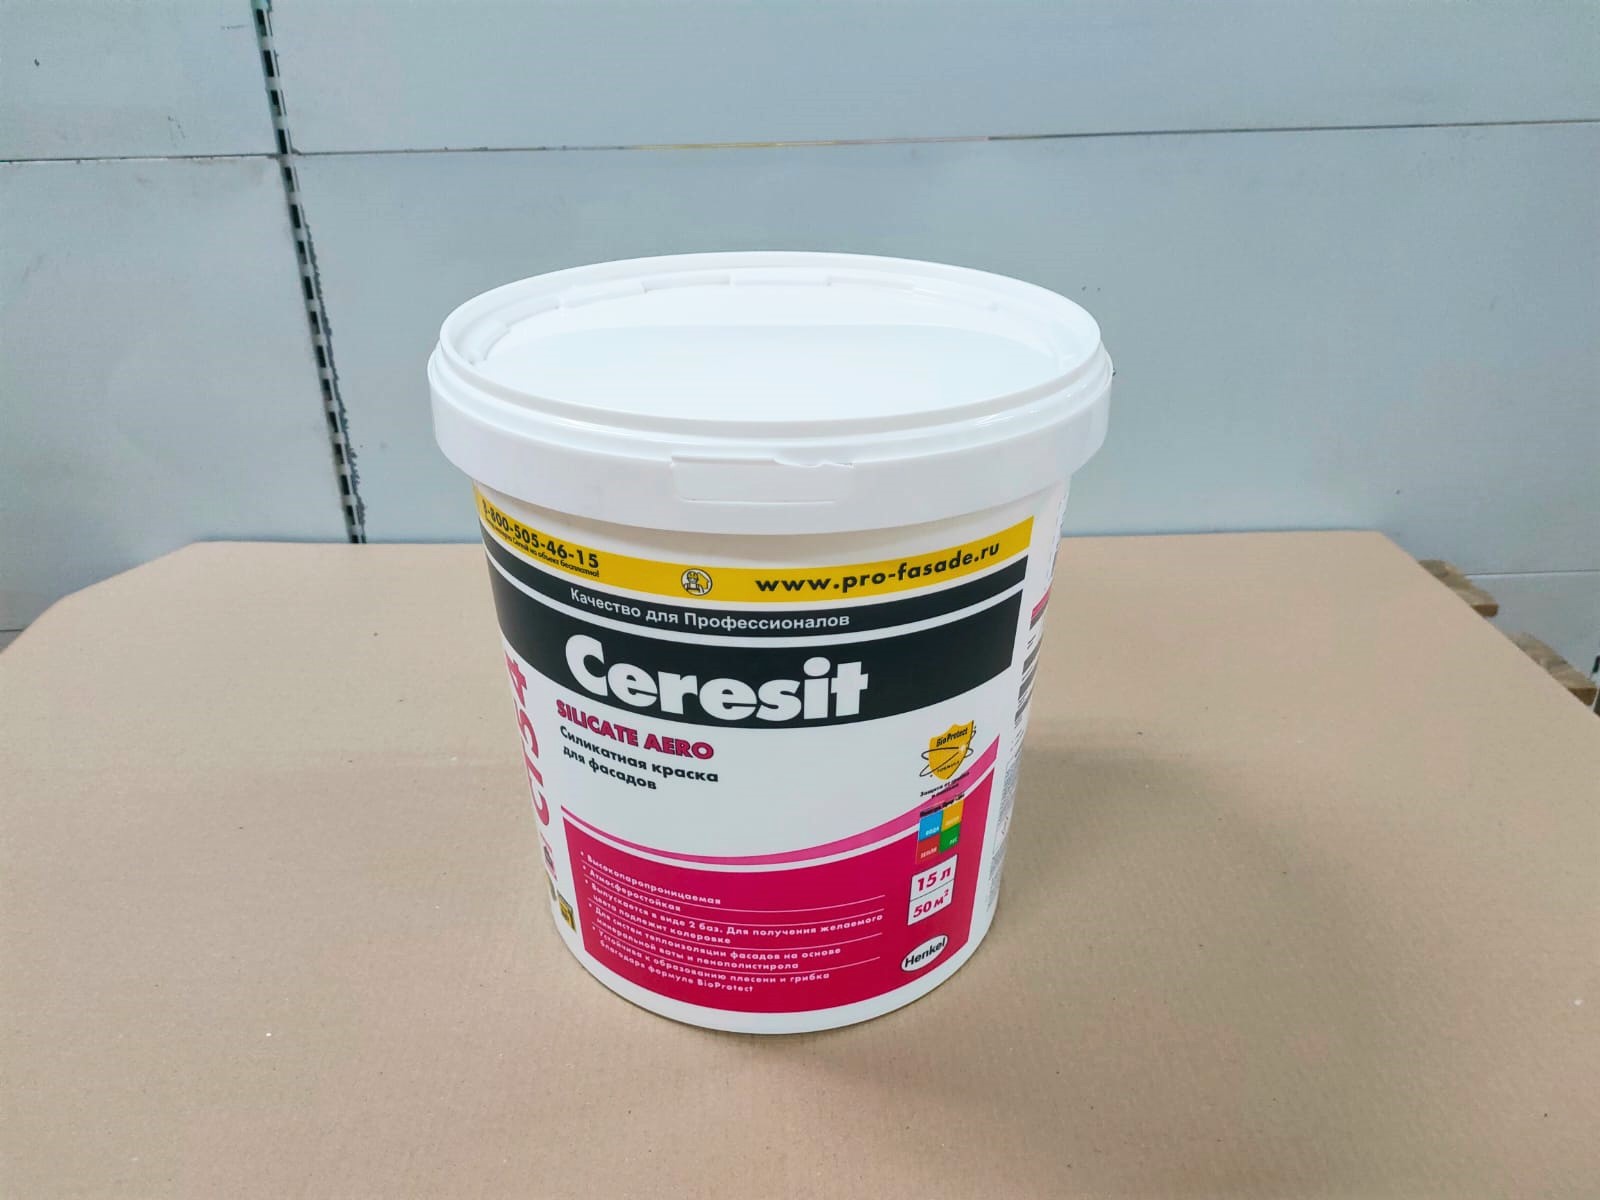 Краска Церезит (Ceresit) СТ 54 силикатная для наружных работ, 15 л